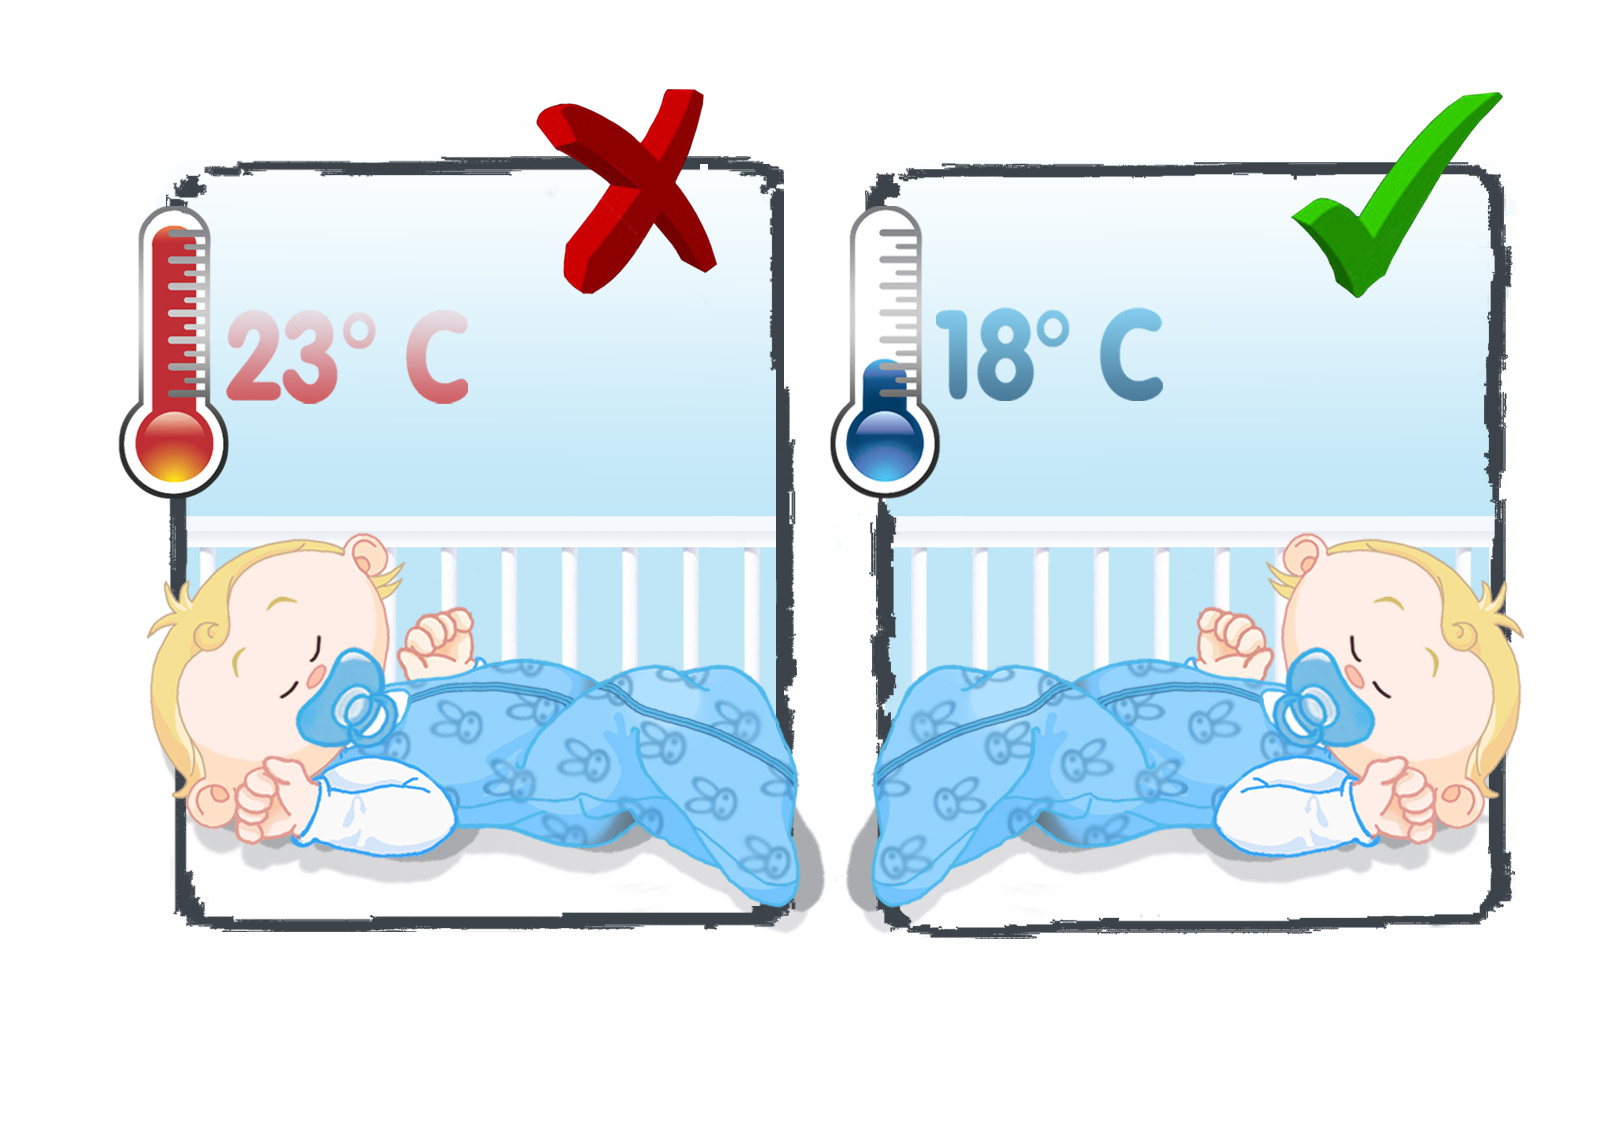 Идеальная температура в комнате новорожденного: тепло или прохлада? стоит ли бояться сквозняка?